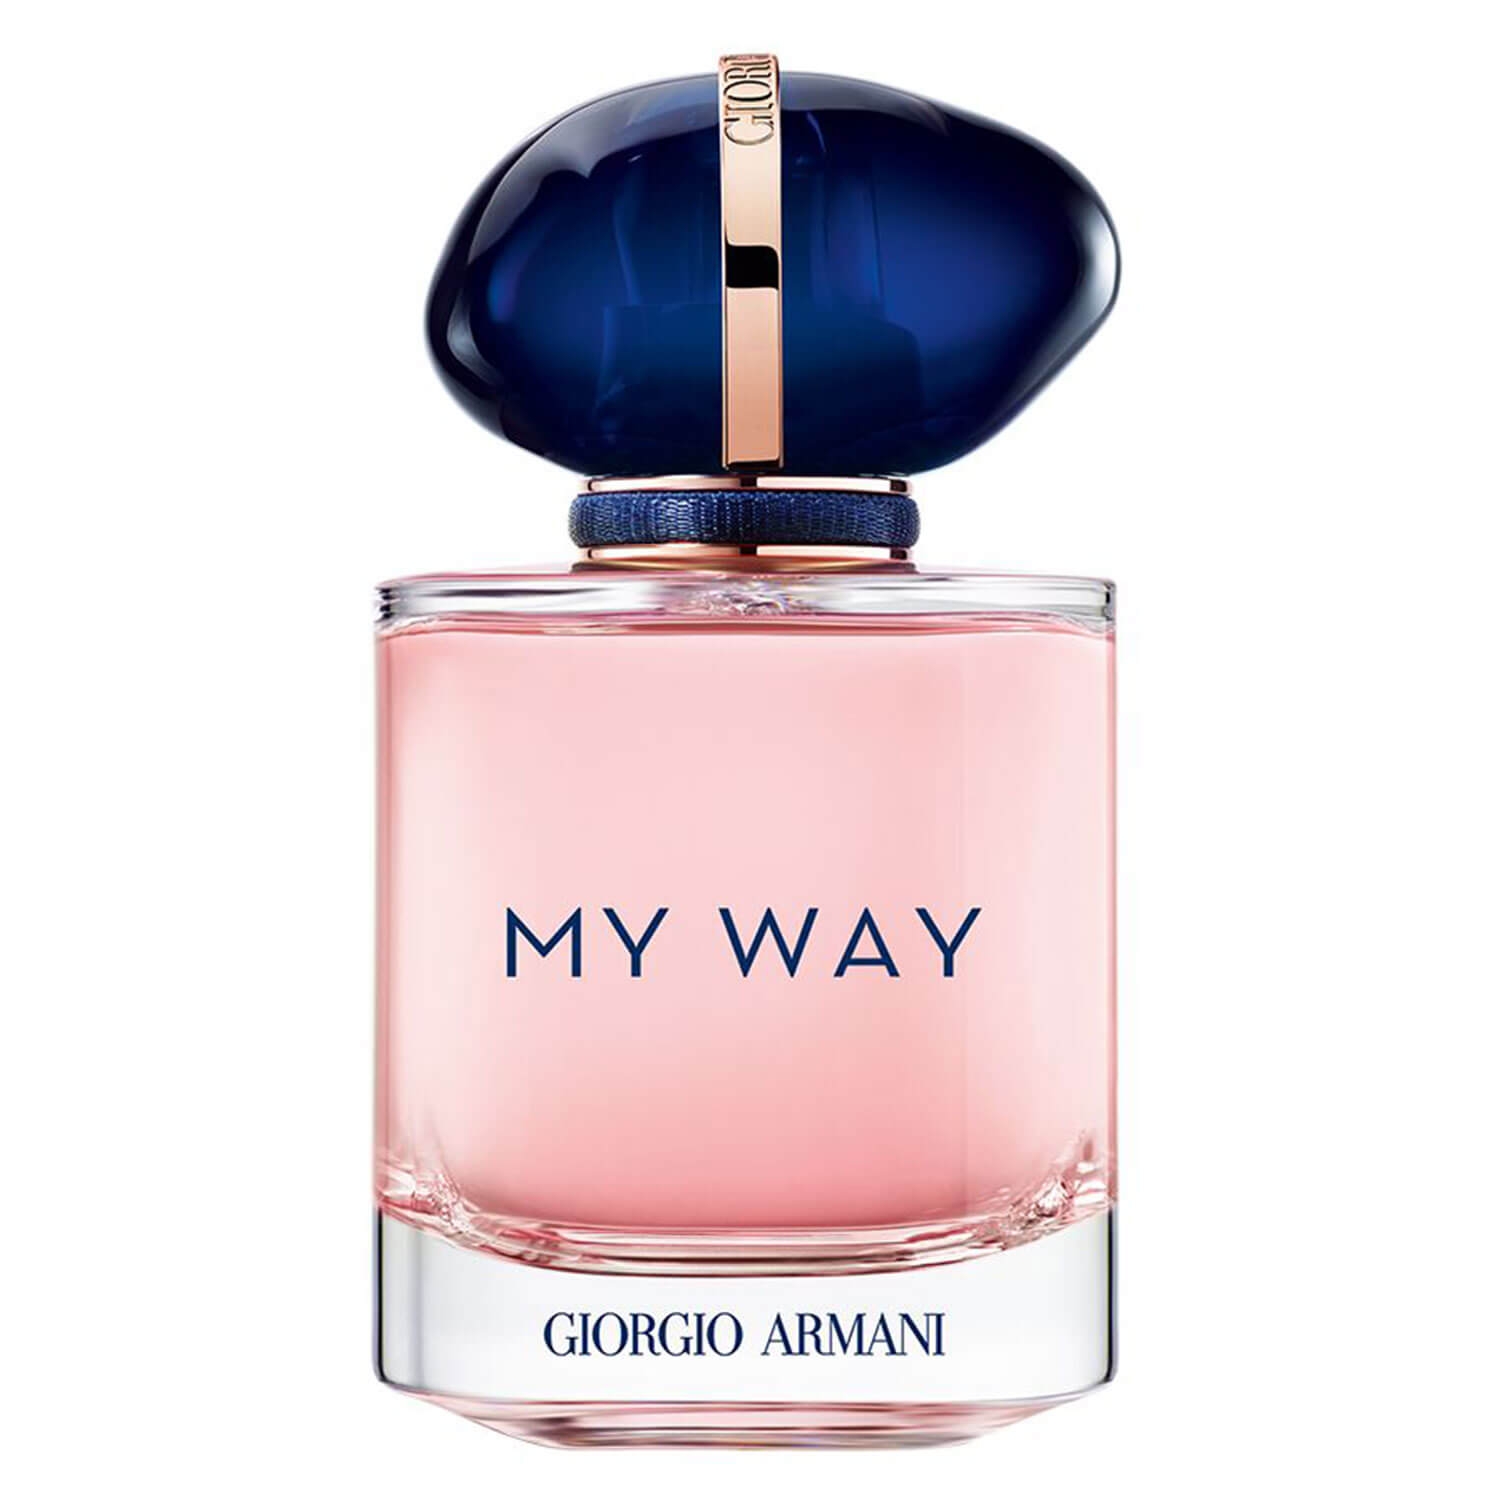 Produktbild von MY WAY - Eau de Parfum